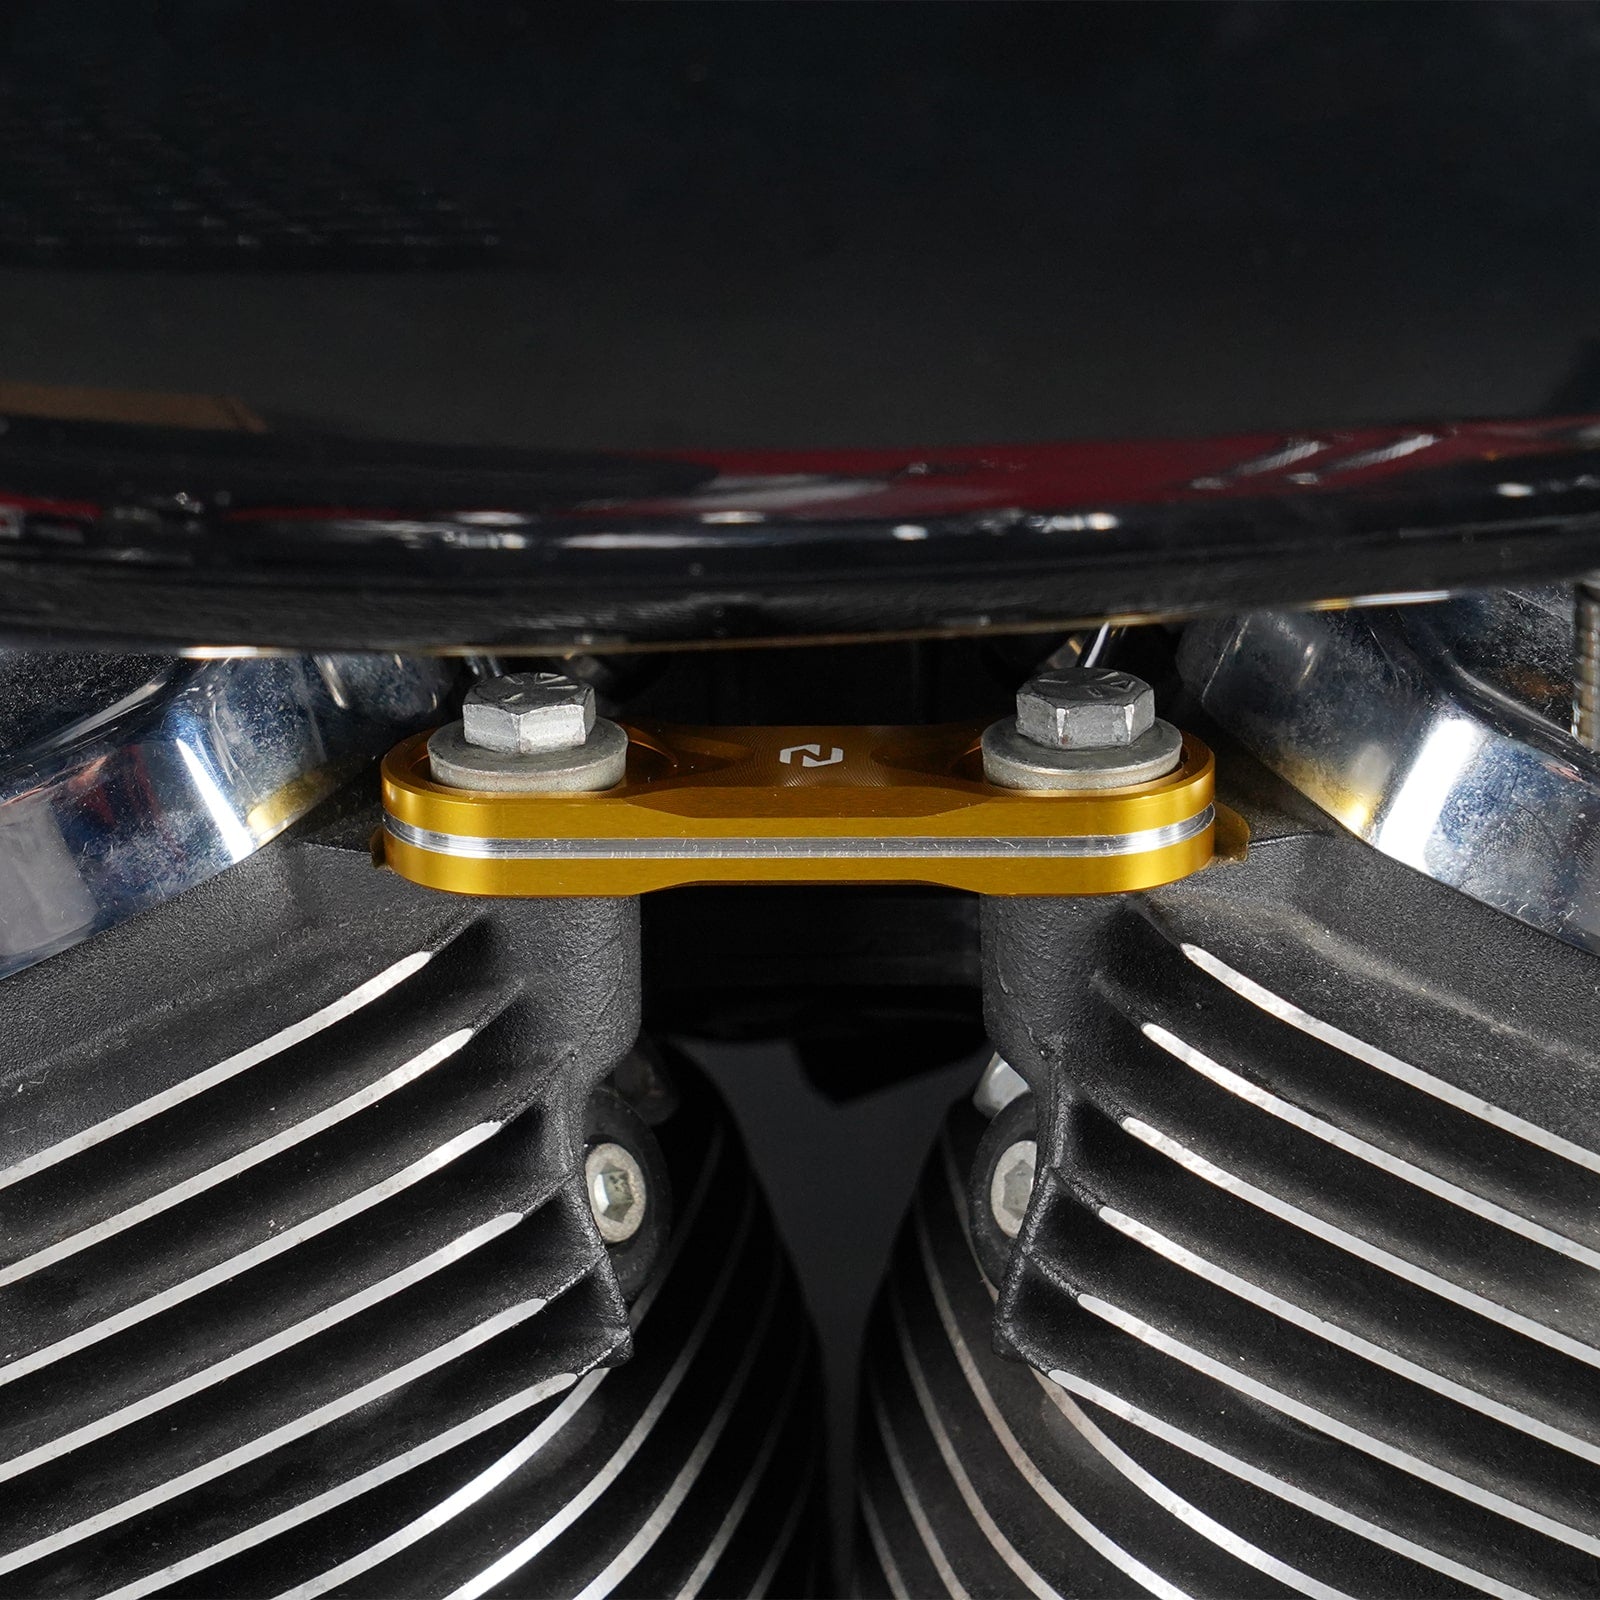 Horn Relocation Delete Kit for Harley Davidson M8 Engine Touring Models